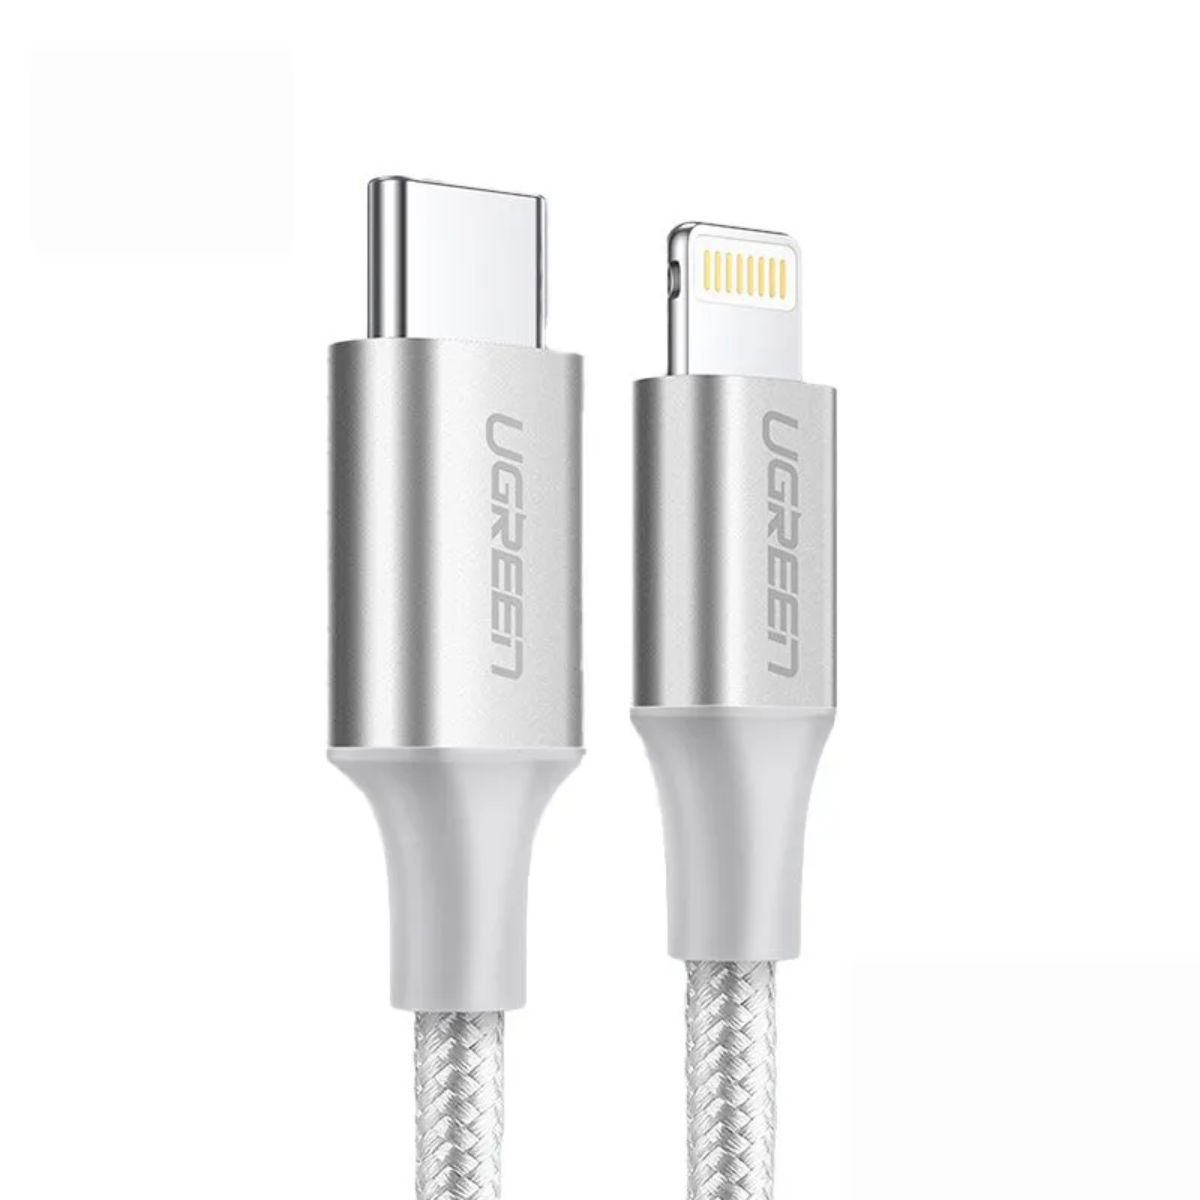 Cáp sạc 2m USB Lightning Ugreen 70525 US304 màu bạc, tốc độ truyền dữ liệu 480Mbps, sạc nhanh 3A